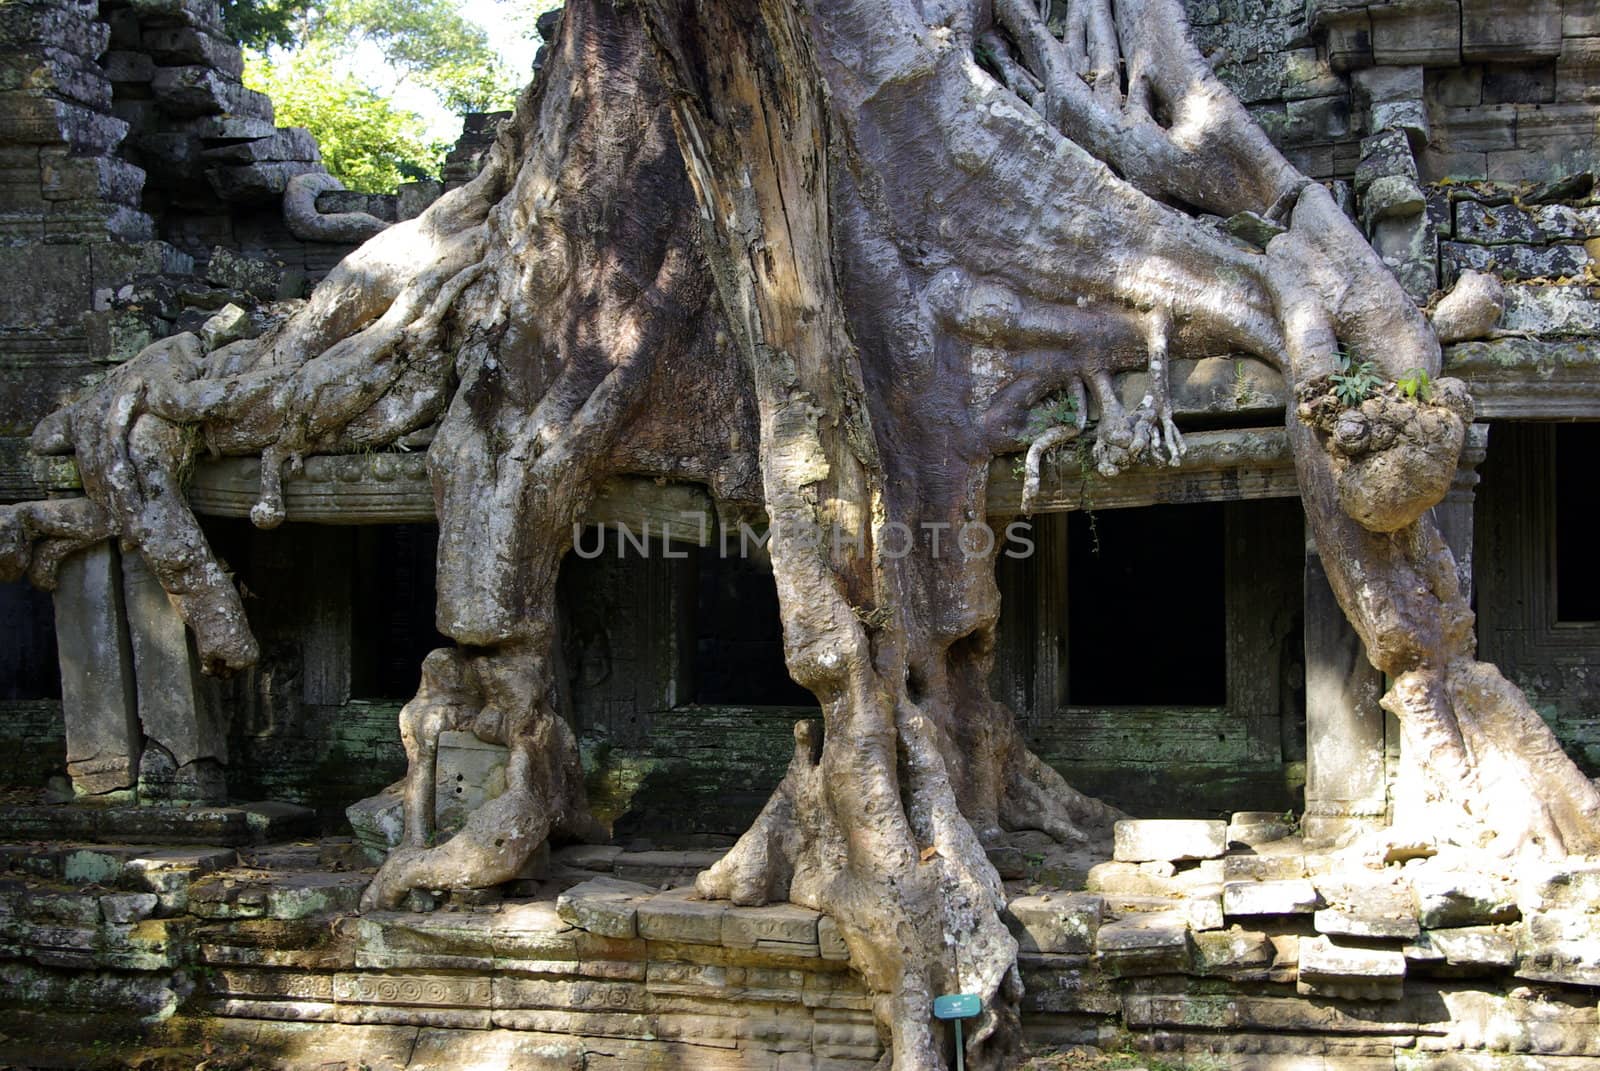 Enormous tree roots at Angkor by shkyo30